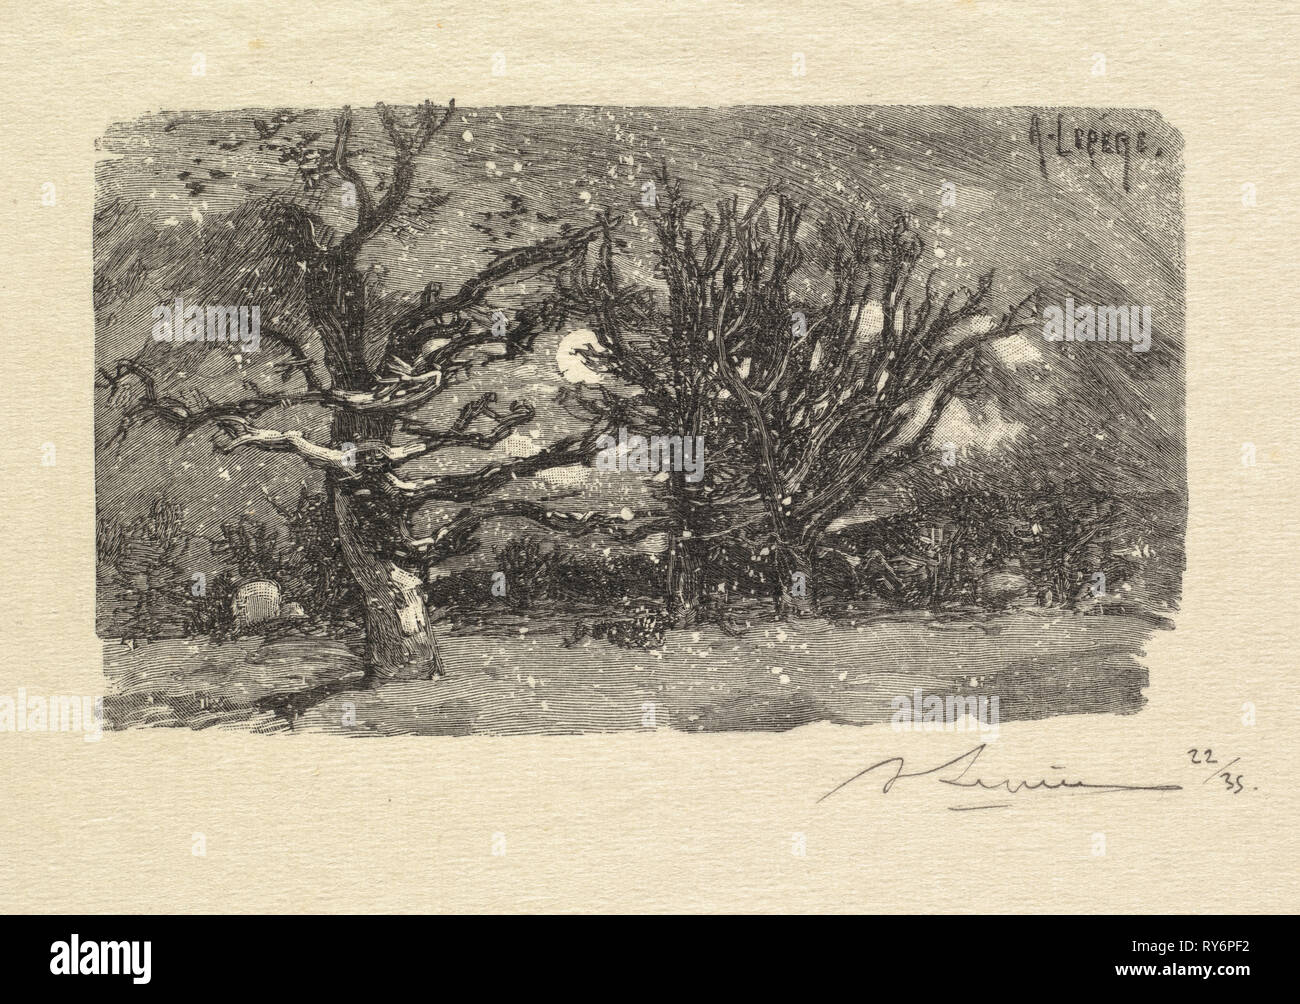 Fontainebleau Forest: Au dormoir de Lantara (La Forêt de Fontainebleau: Au dormoir de Lantara), 1890. Auguste Louis Lepère (French, 1849-1918), A. Desmoulins, Published in Revue Illustrée, 1887-90. Wood engraving from bound volume of 34 ; sheet: 15.4 x 22.2 cm (6 1/16 x 8 3/4 in.); image: 6.4 x 11.3 cm (2 1/2 x 4 7/16 in Stock Photo